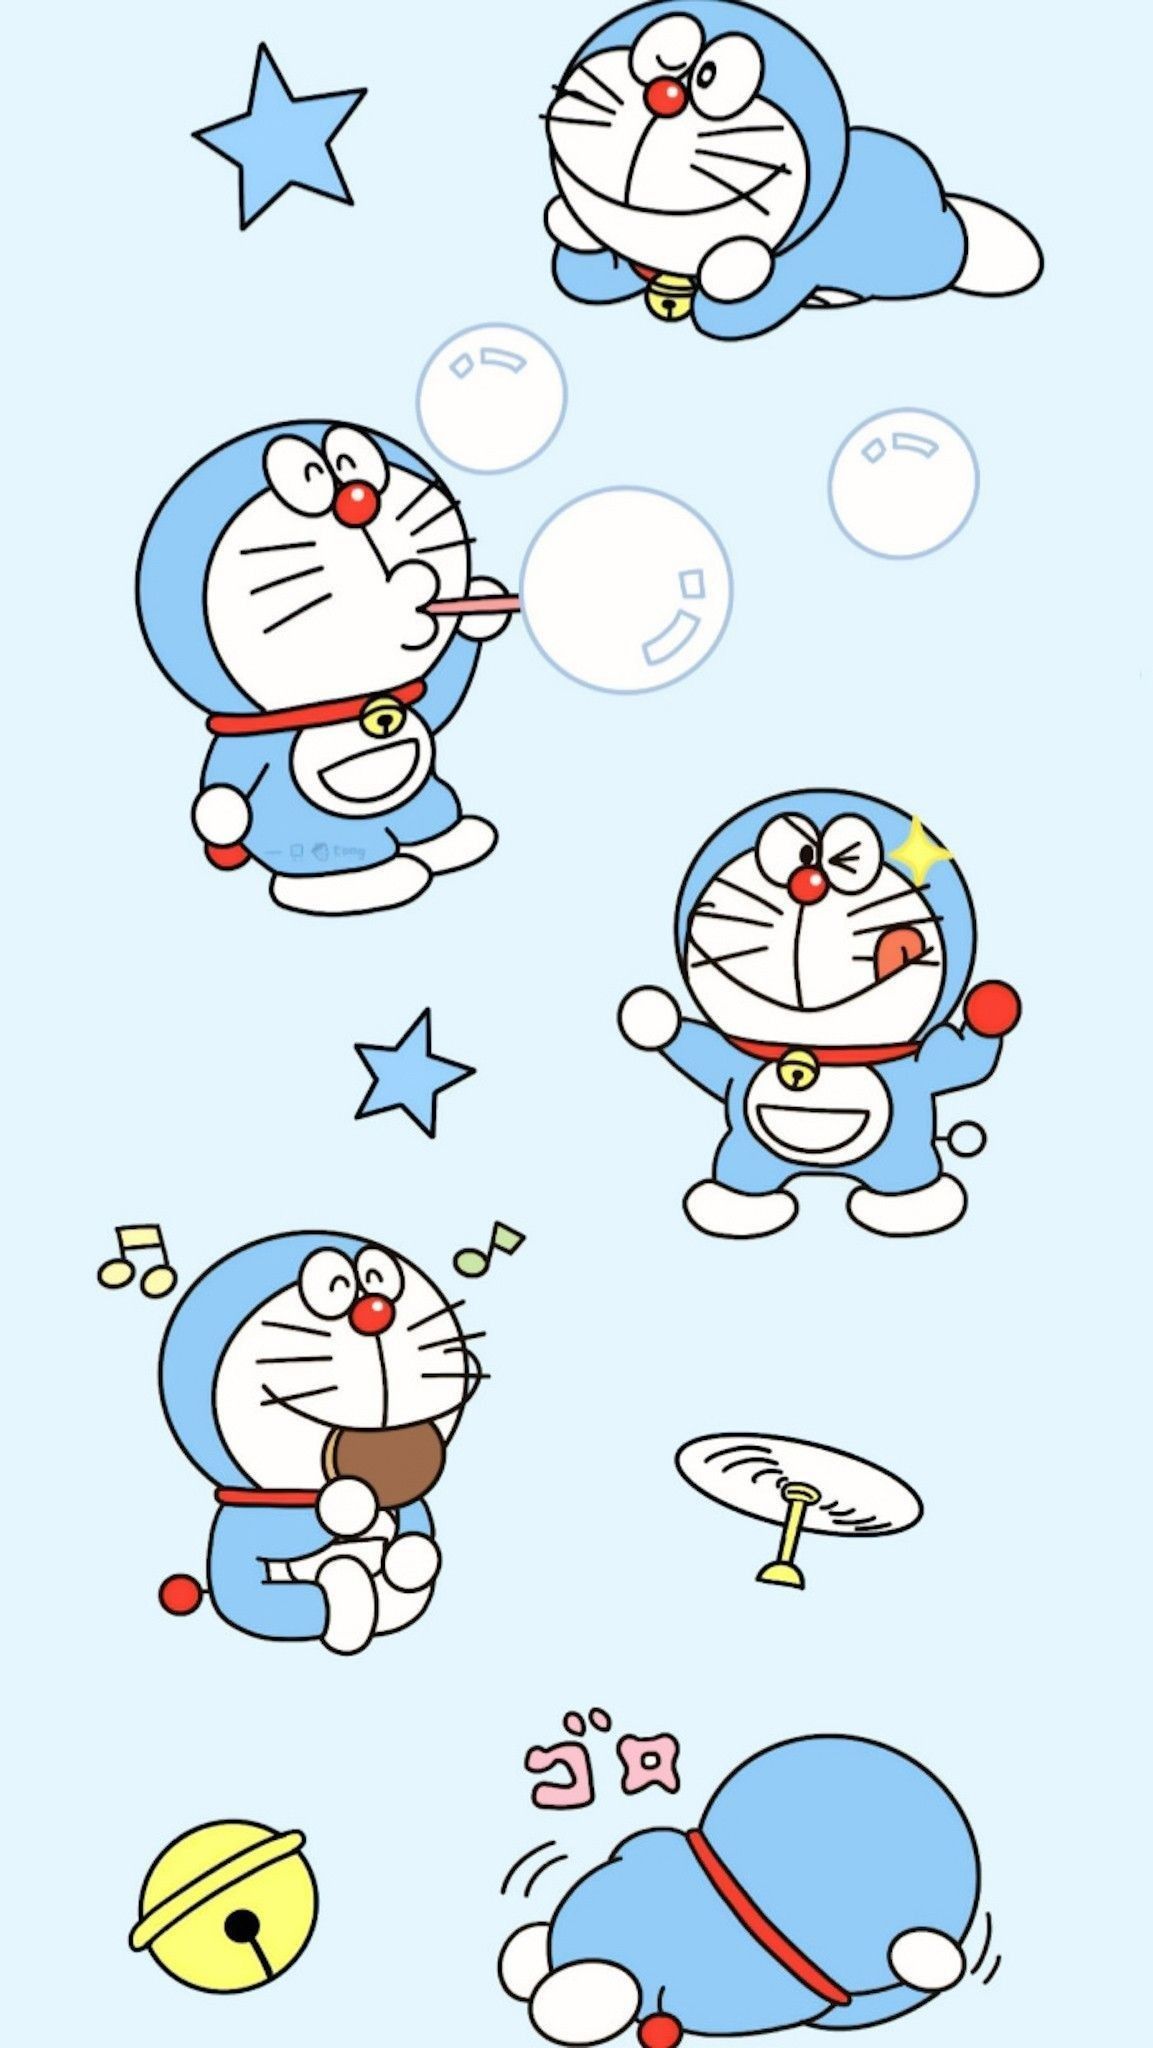 Doraemon 2021 Wallpaper